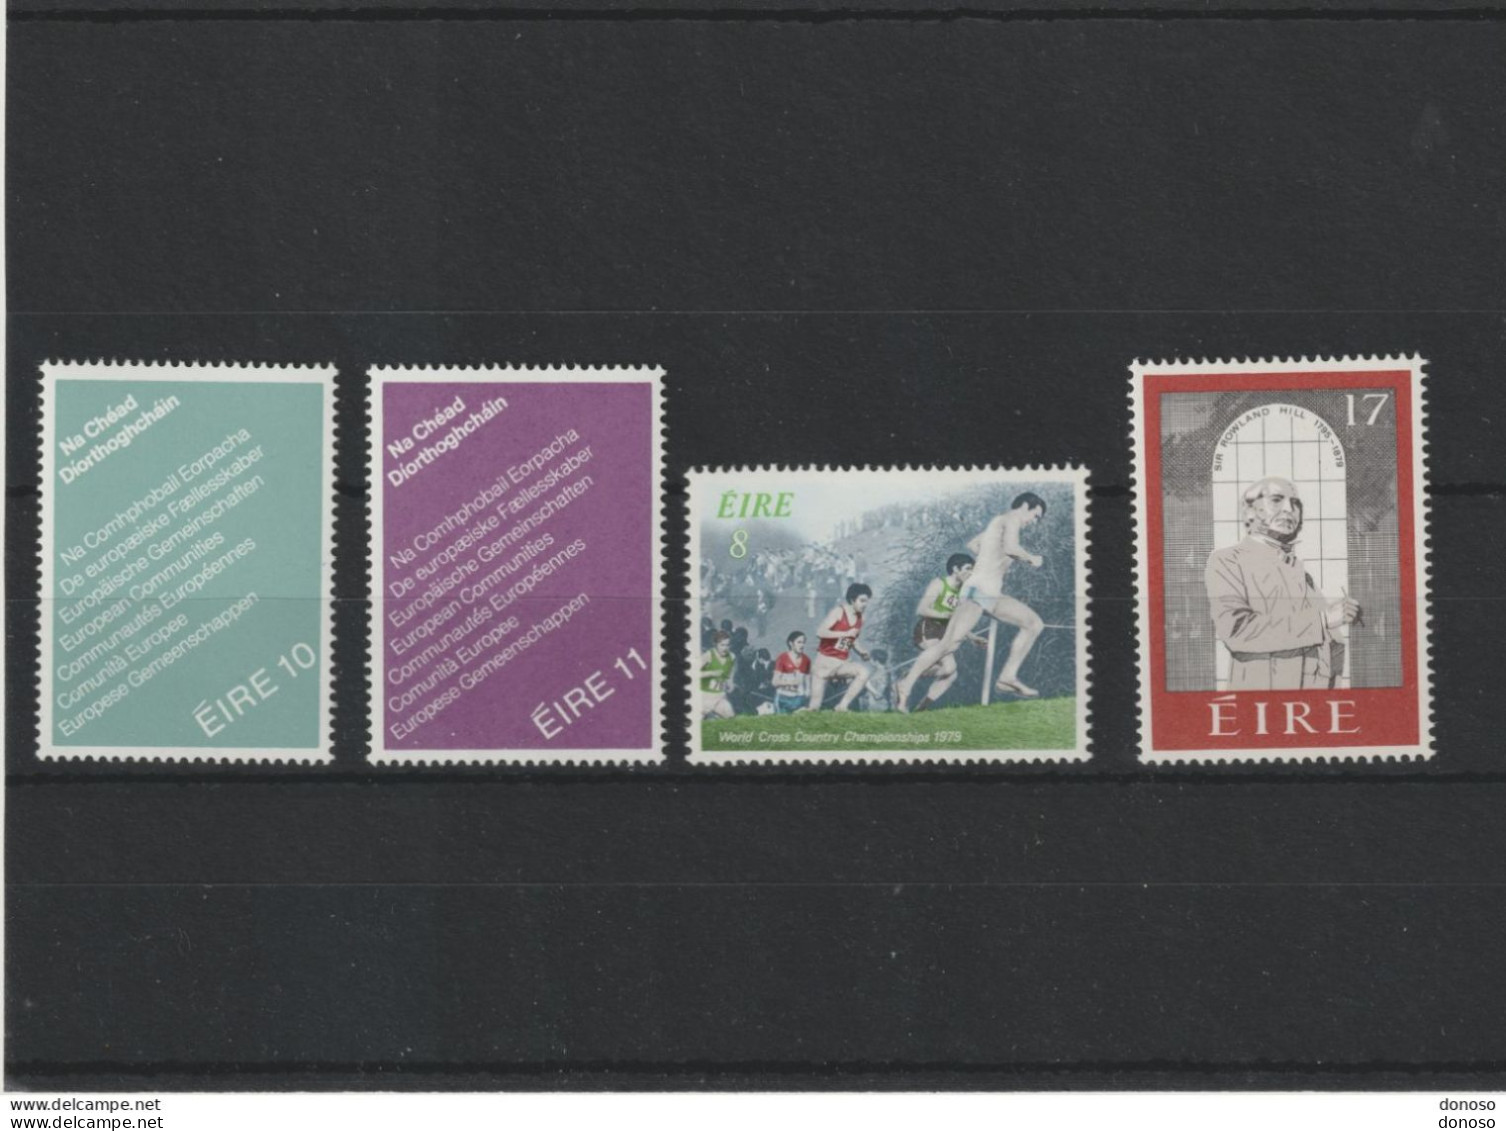 IRLANDE 1979 Yvert 396-399 NEUF** MNH Cote 2,50 Euros - Unused Stamps